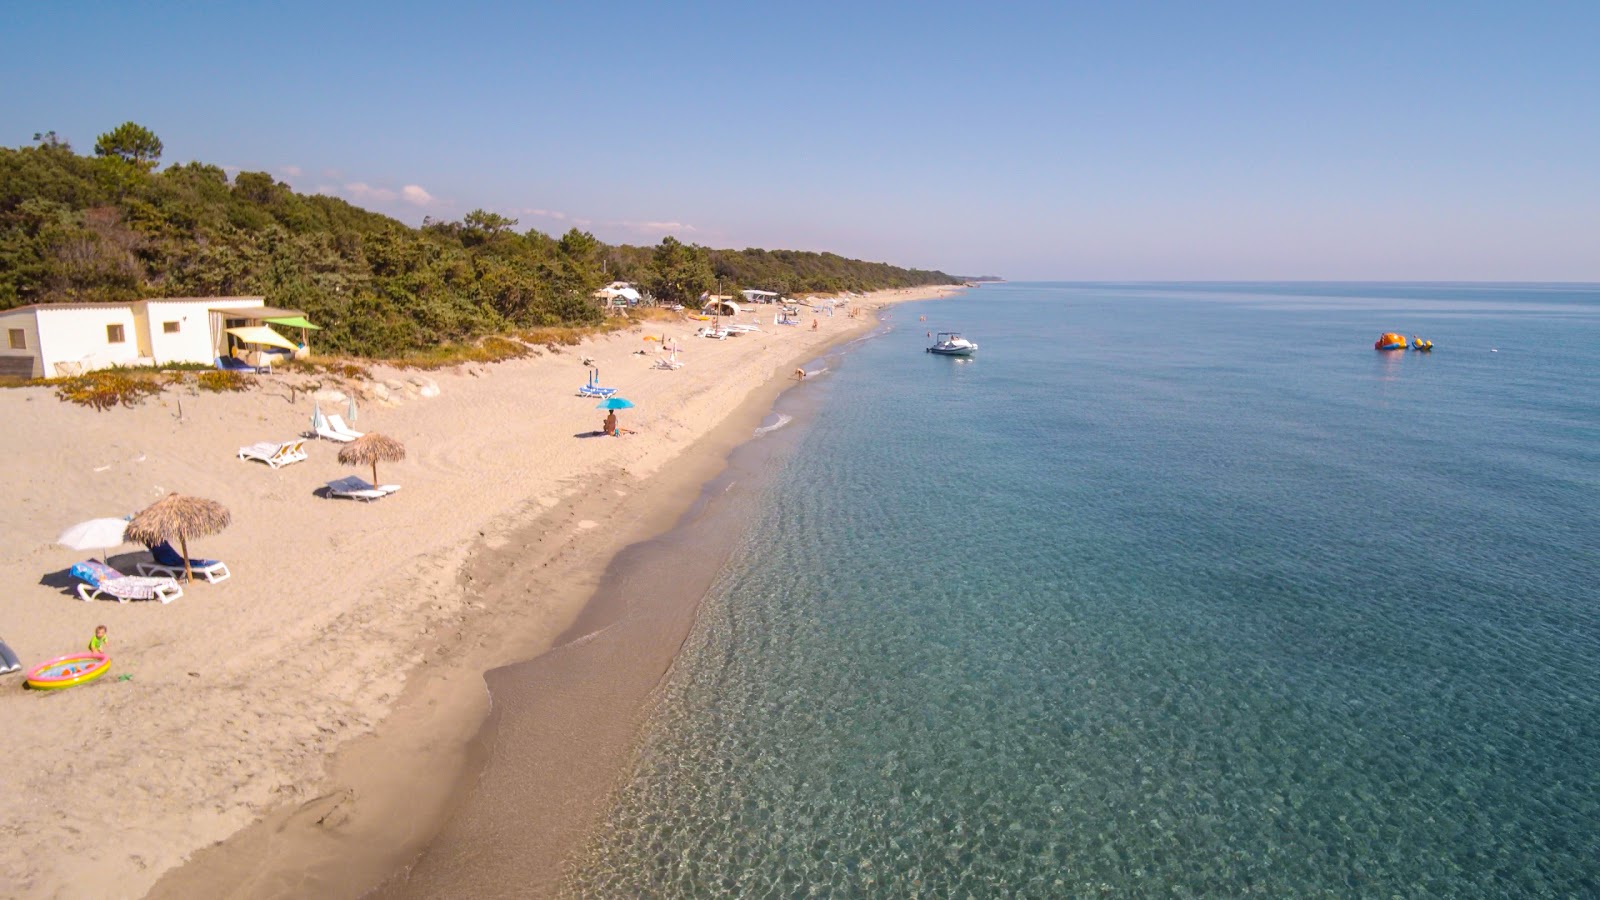 Stintino beach'in fotoğrafı turkuaz saf su yüzey ile